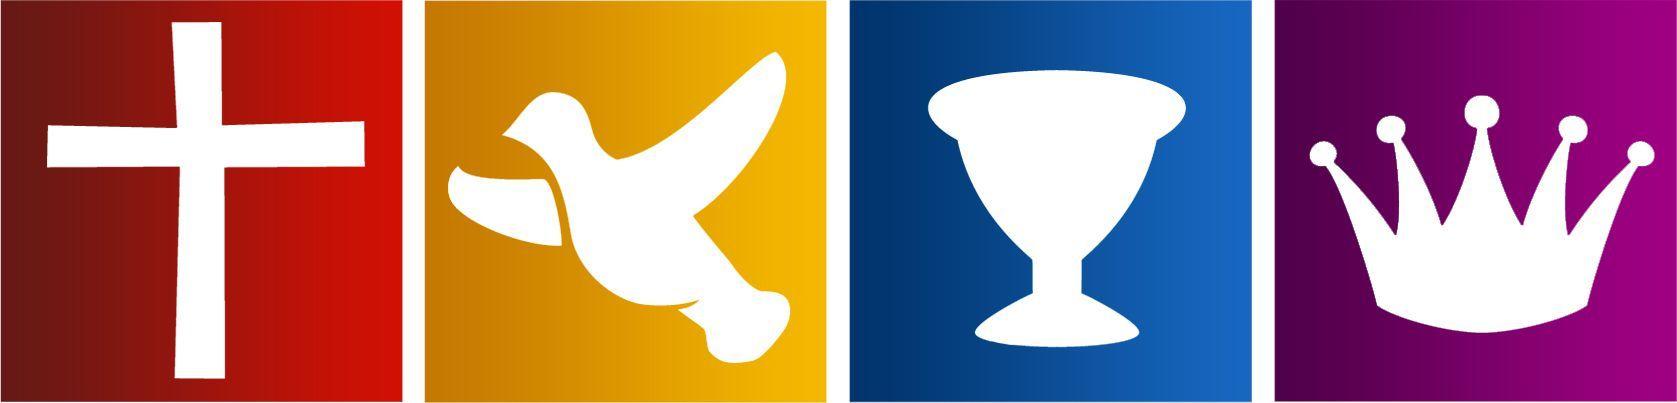 Foursquare Logo - Foursquare Gospel: What Does It Mean?